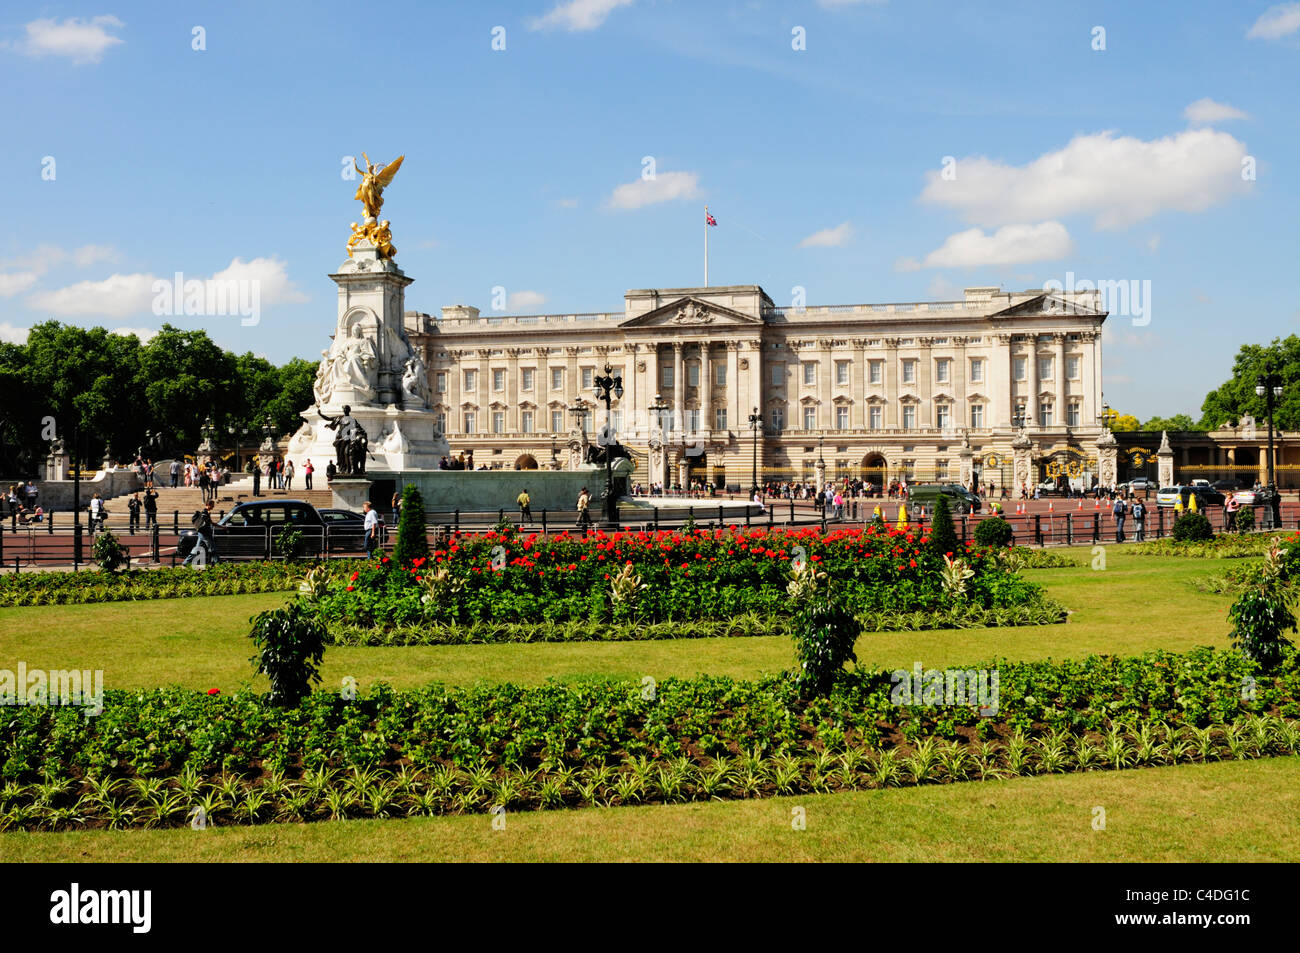 Le palais de Buckingham et de l'Édifice commémoratif Victoria, London, England, UK Banque D'Images